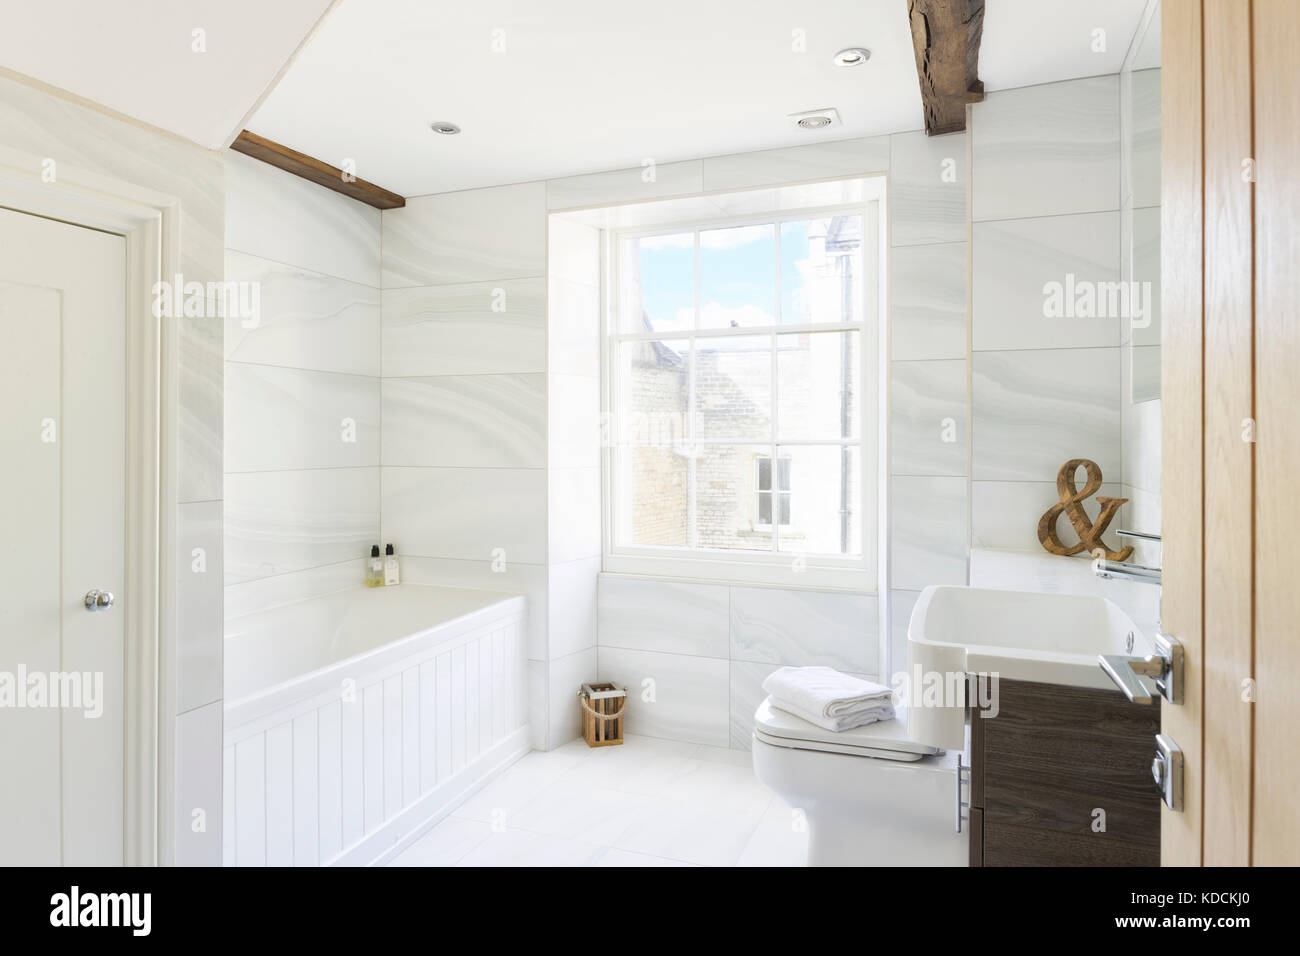 Un contemporain, sol carrelé salle de bains refaite dans une période de réaménagement de l'intérieur britannique. Banque D'Images